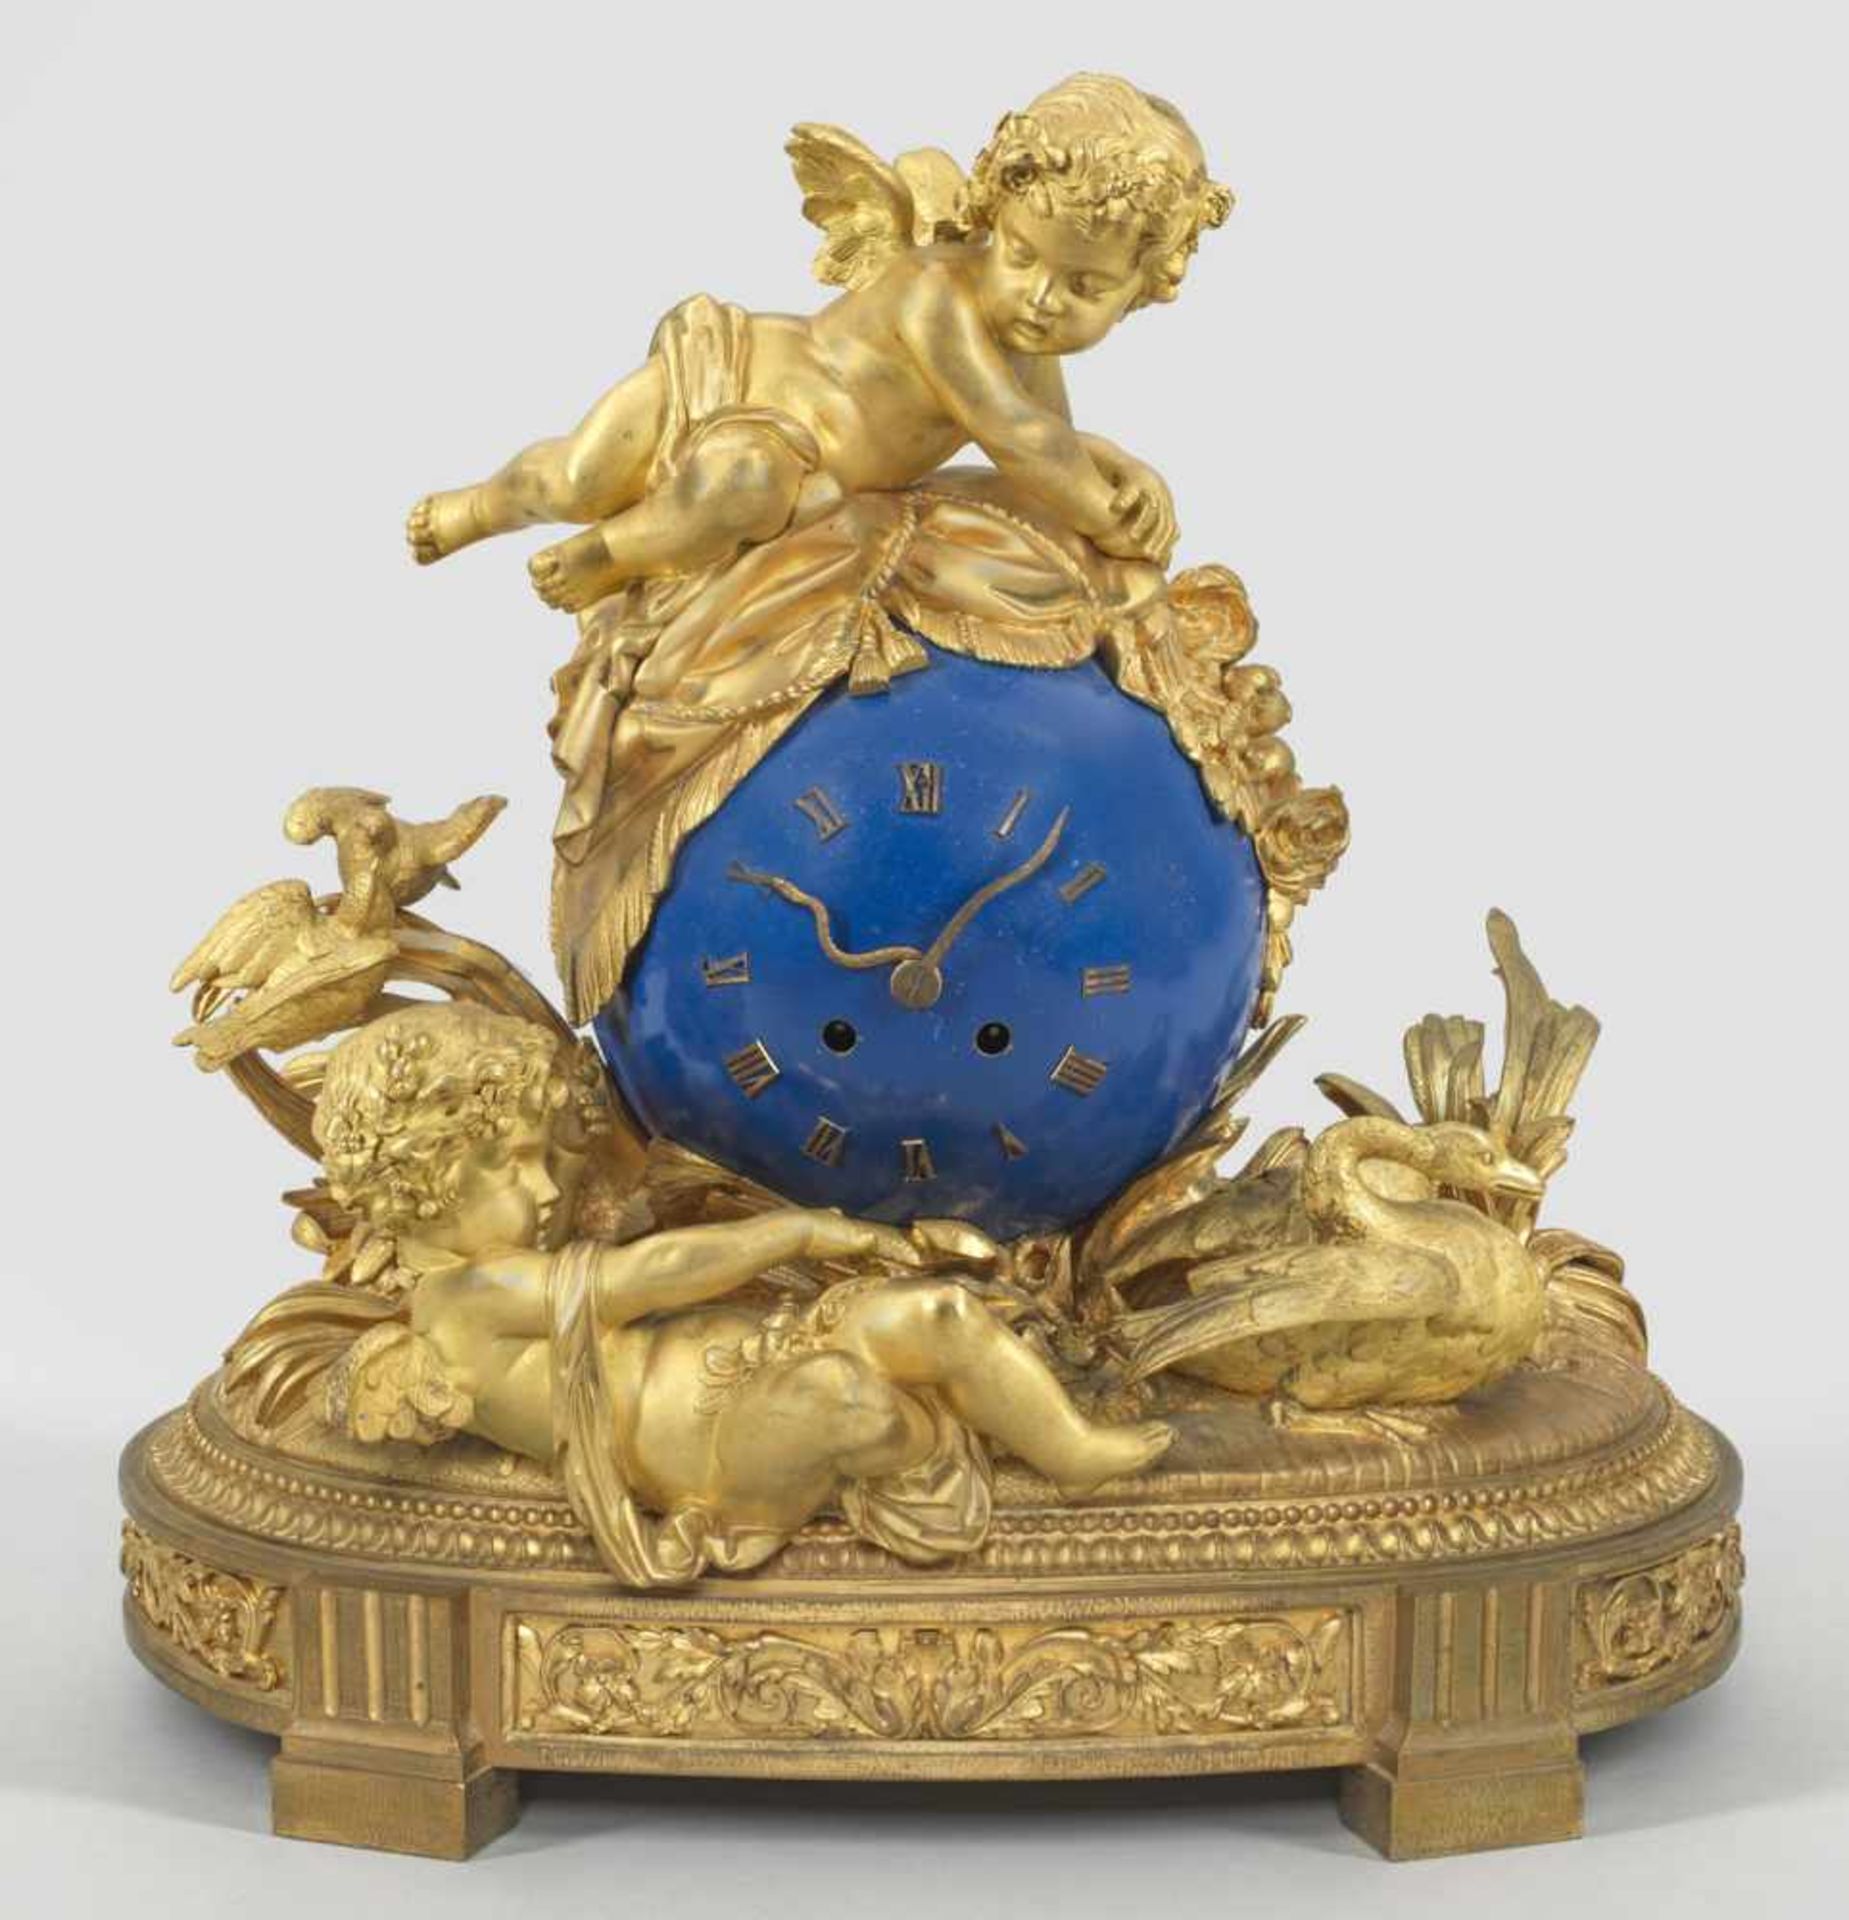 Große Louis XVI-Pendule von Henri PicardBronze, vergoldet sowie teilw. blau lackiert. Vollplastische